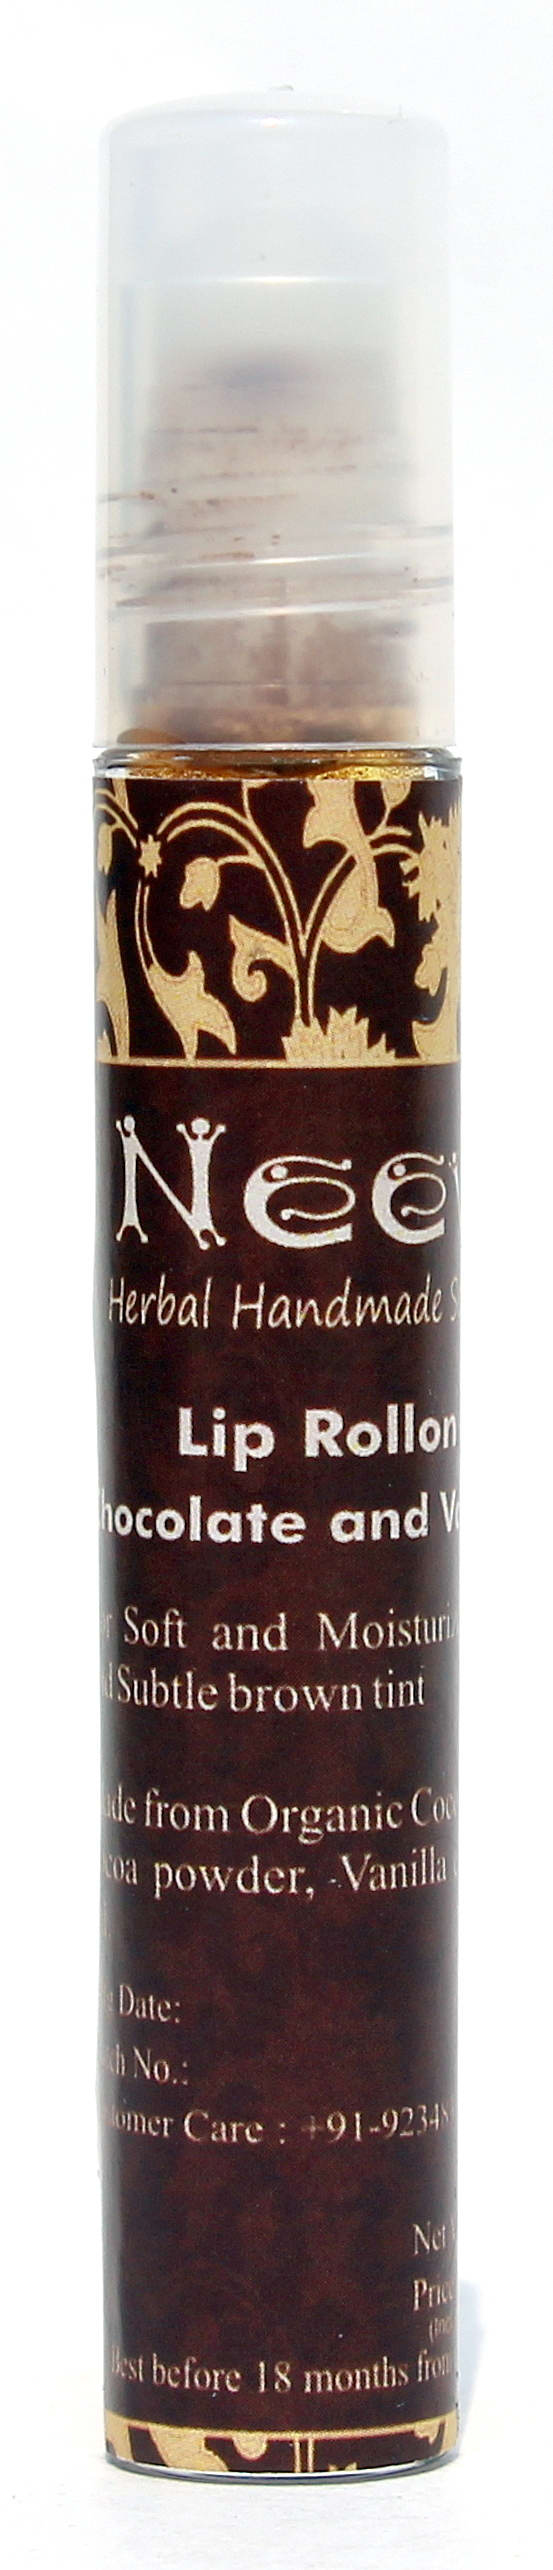 Lip Rollon Chocolate and Vanilla